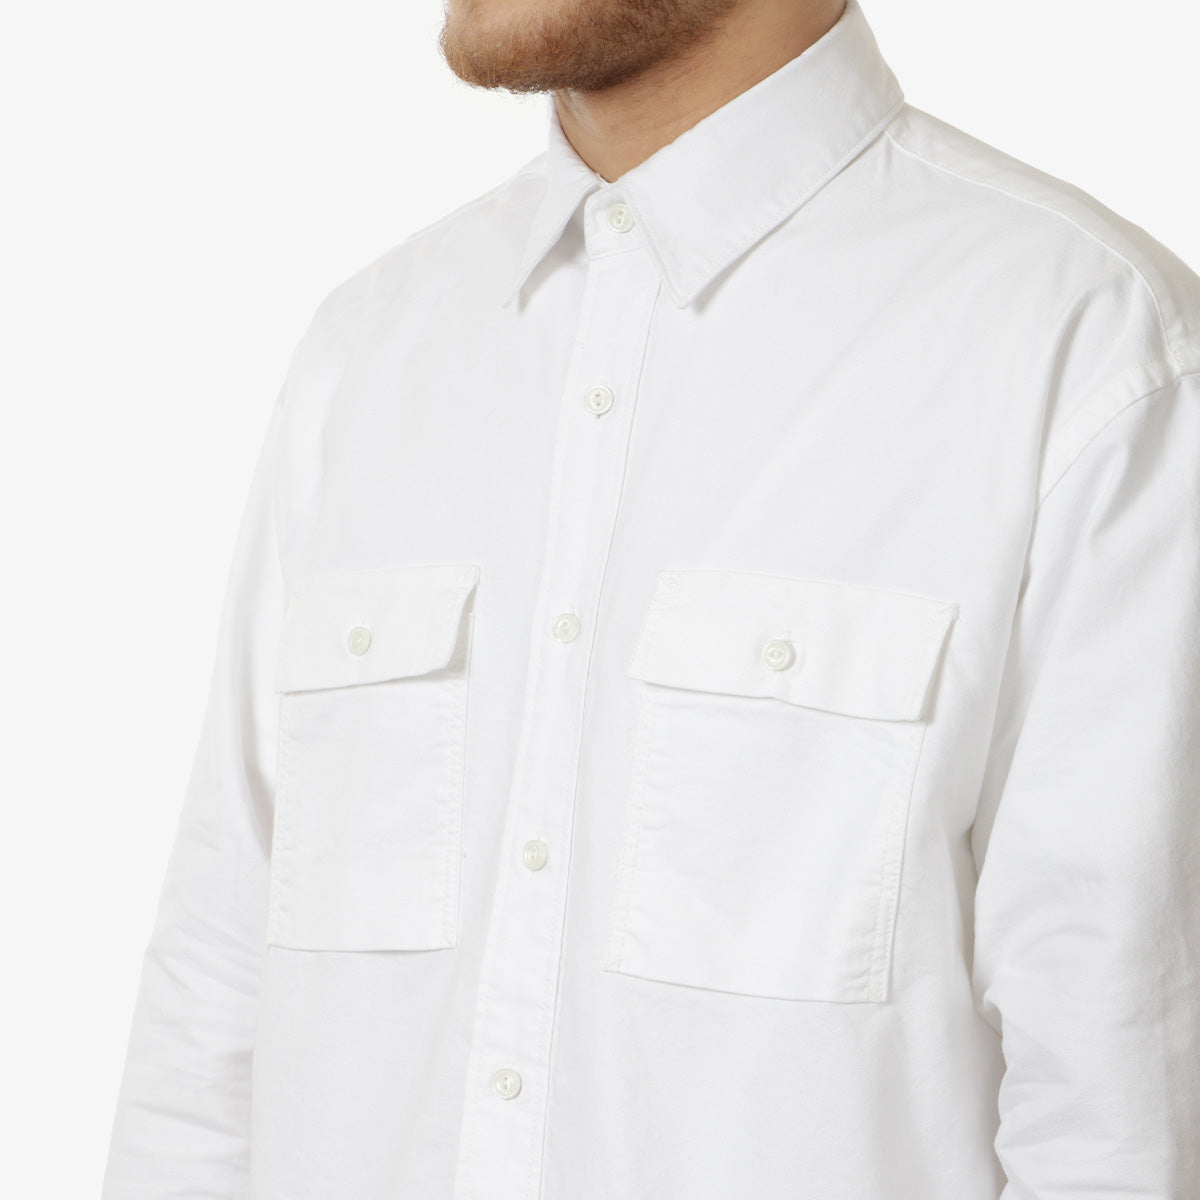 FrizmWORKS Cigarette Pocket Chambray Shirt, White, Detail Shot 2